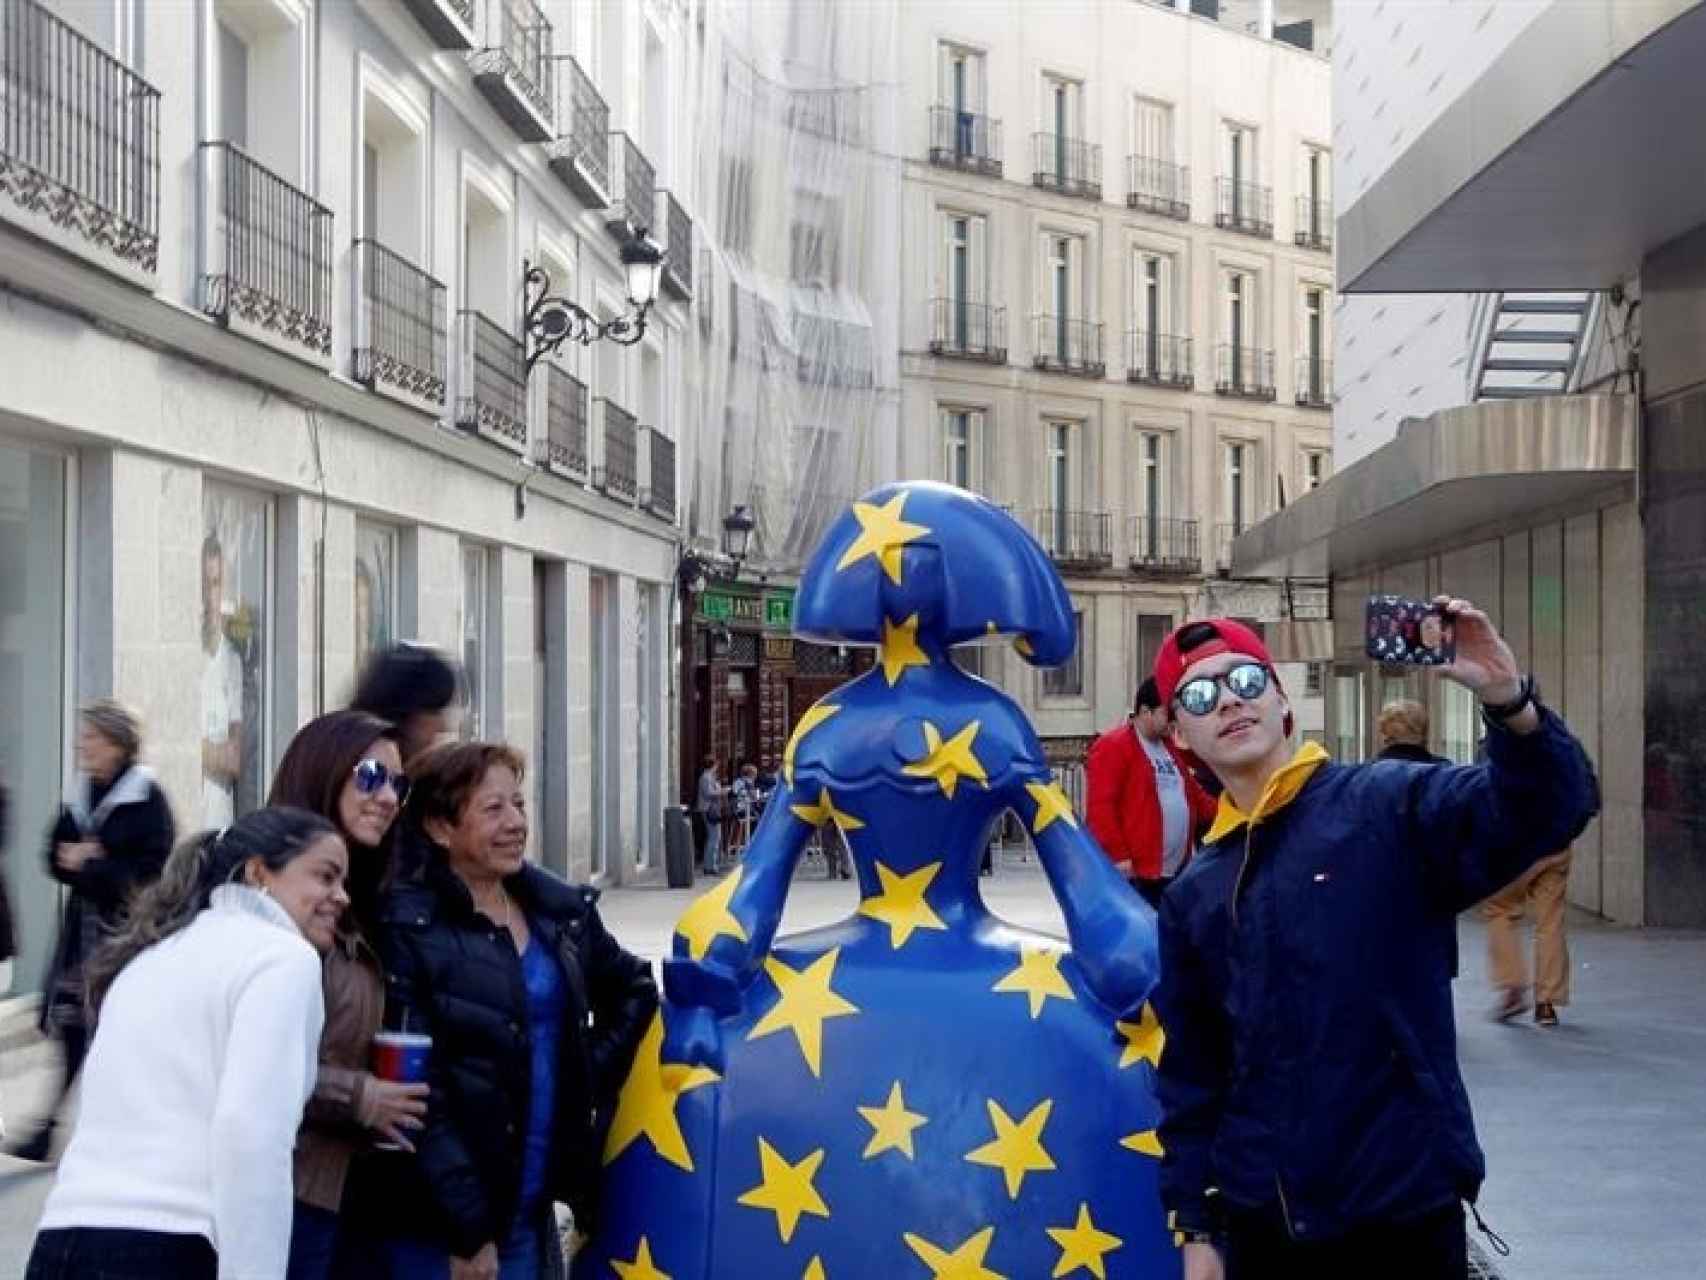 La idea de llevar el arte a la calle, según la alcaldesa de Madrid.